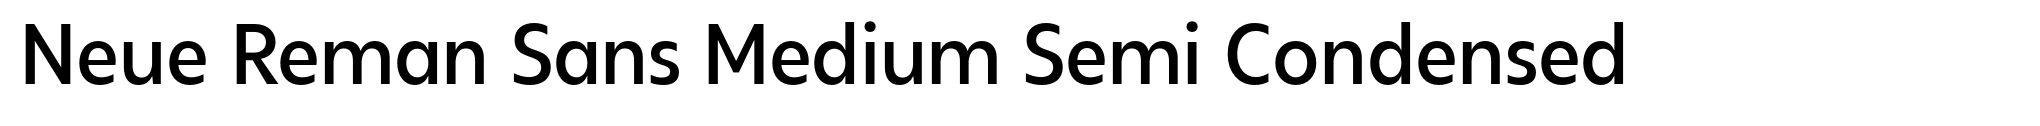 Neue Reman Sans Medium Semi Condensed image